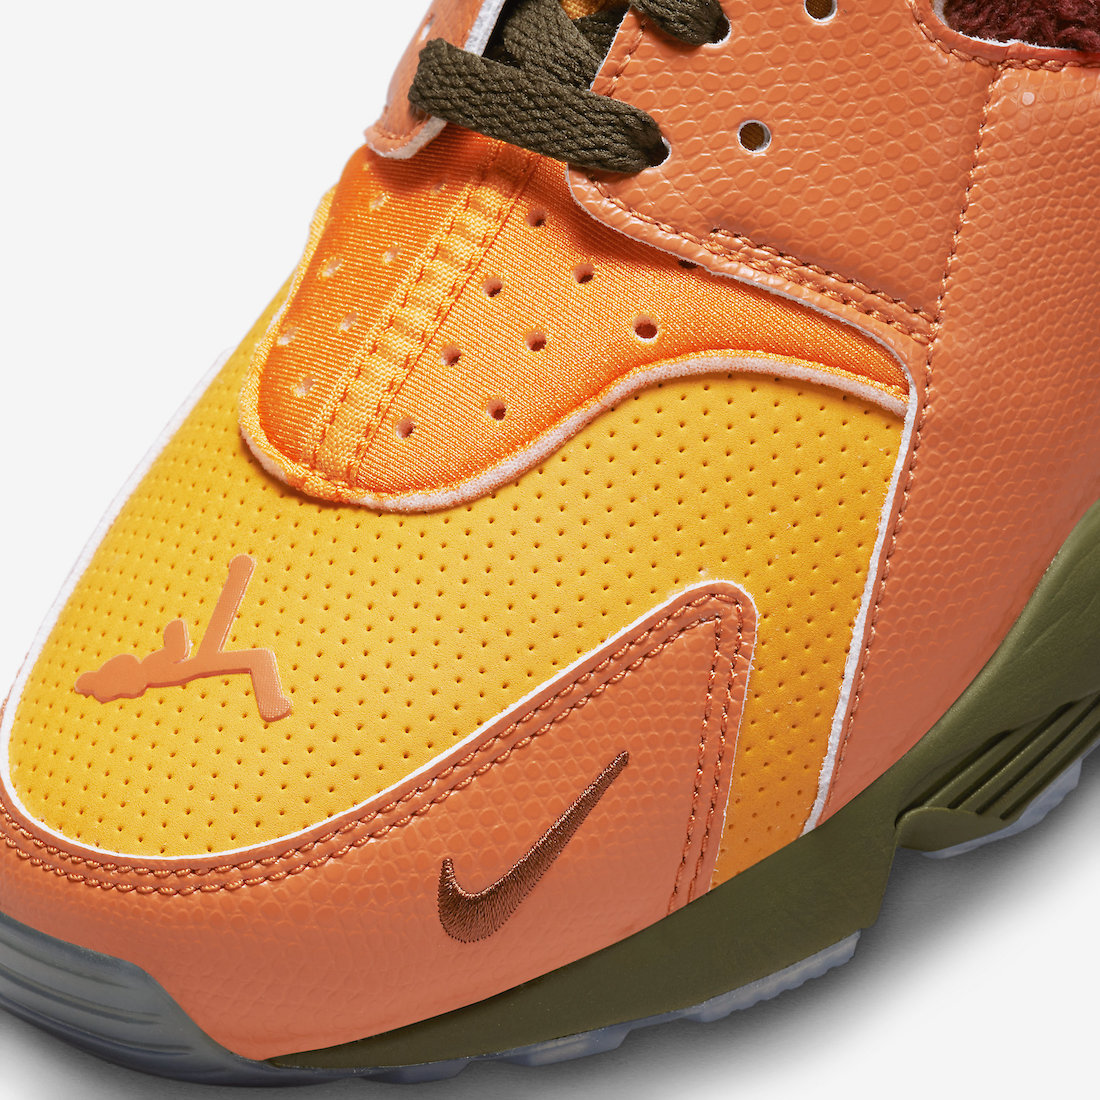 Nike Air Huarache Doernbecher Kumquat FD9712-800 Release Date